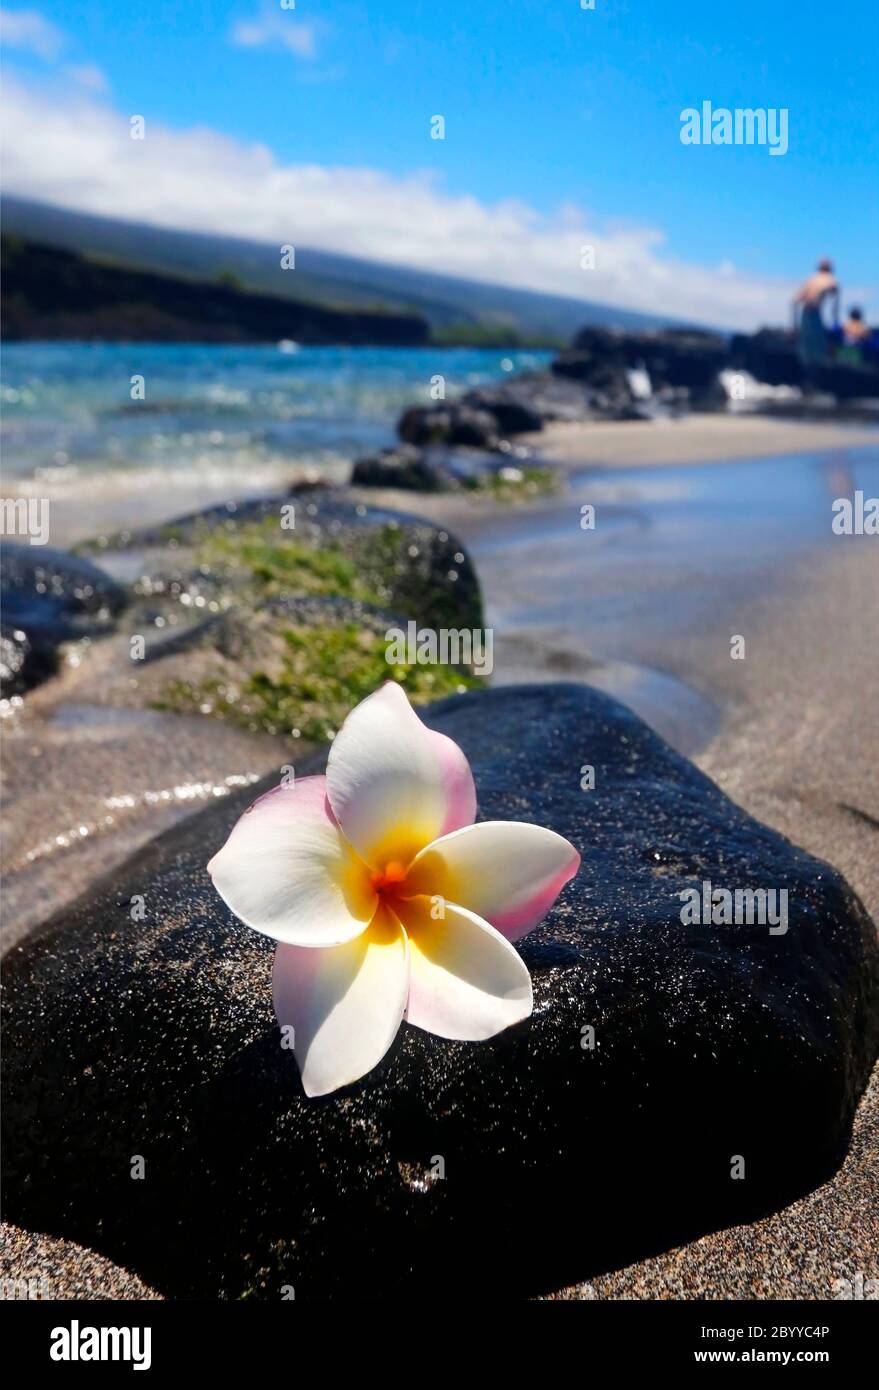 Vue panoramique avec fleur de frangipani blanche sur la pierre de lave noire dans la plage de l'océan pacifique dans une profondeur de champ peu profonde. Hawaï Big Island, États-Unis. Banque D'Images